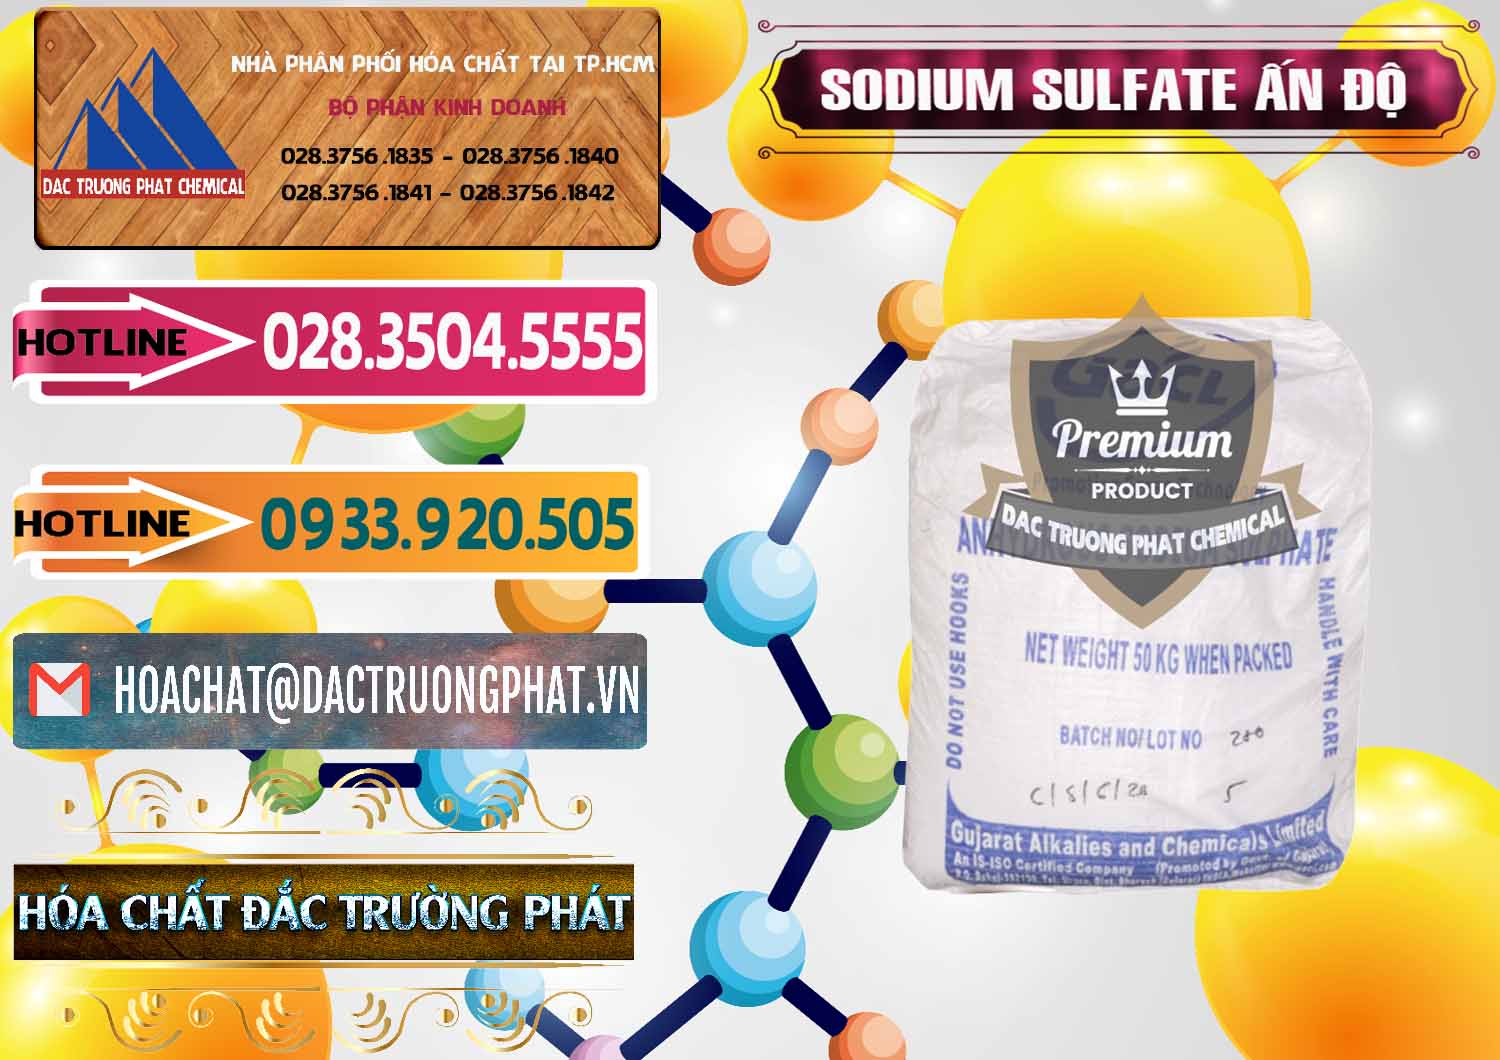 Nơi chuyên cung ứng và bán Sodium Sulphate - Muối Sunfat Na2SO4 GACL Ấn Độ India - 0461 - Cty cung cấp - phân phối hóa chất tại TP.HCM - dactruongphat.vn